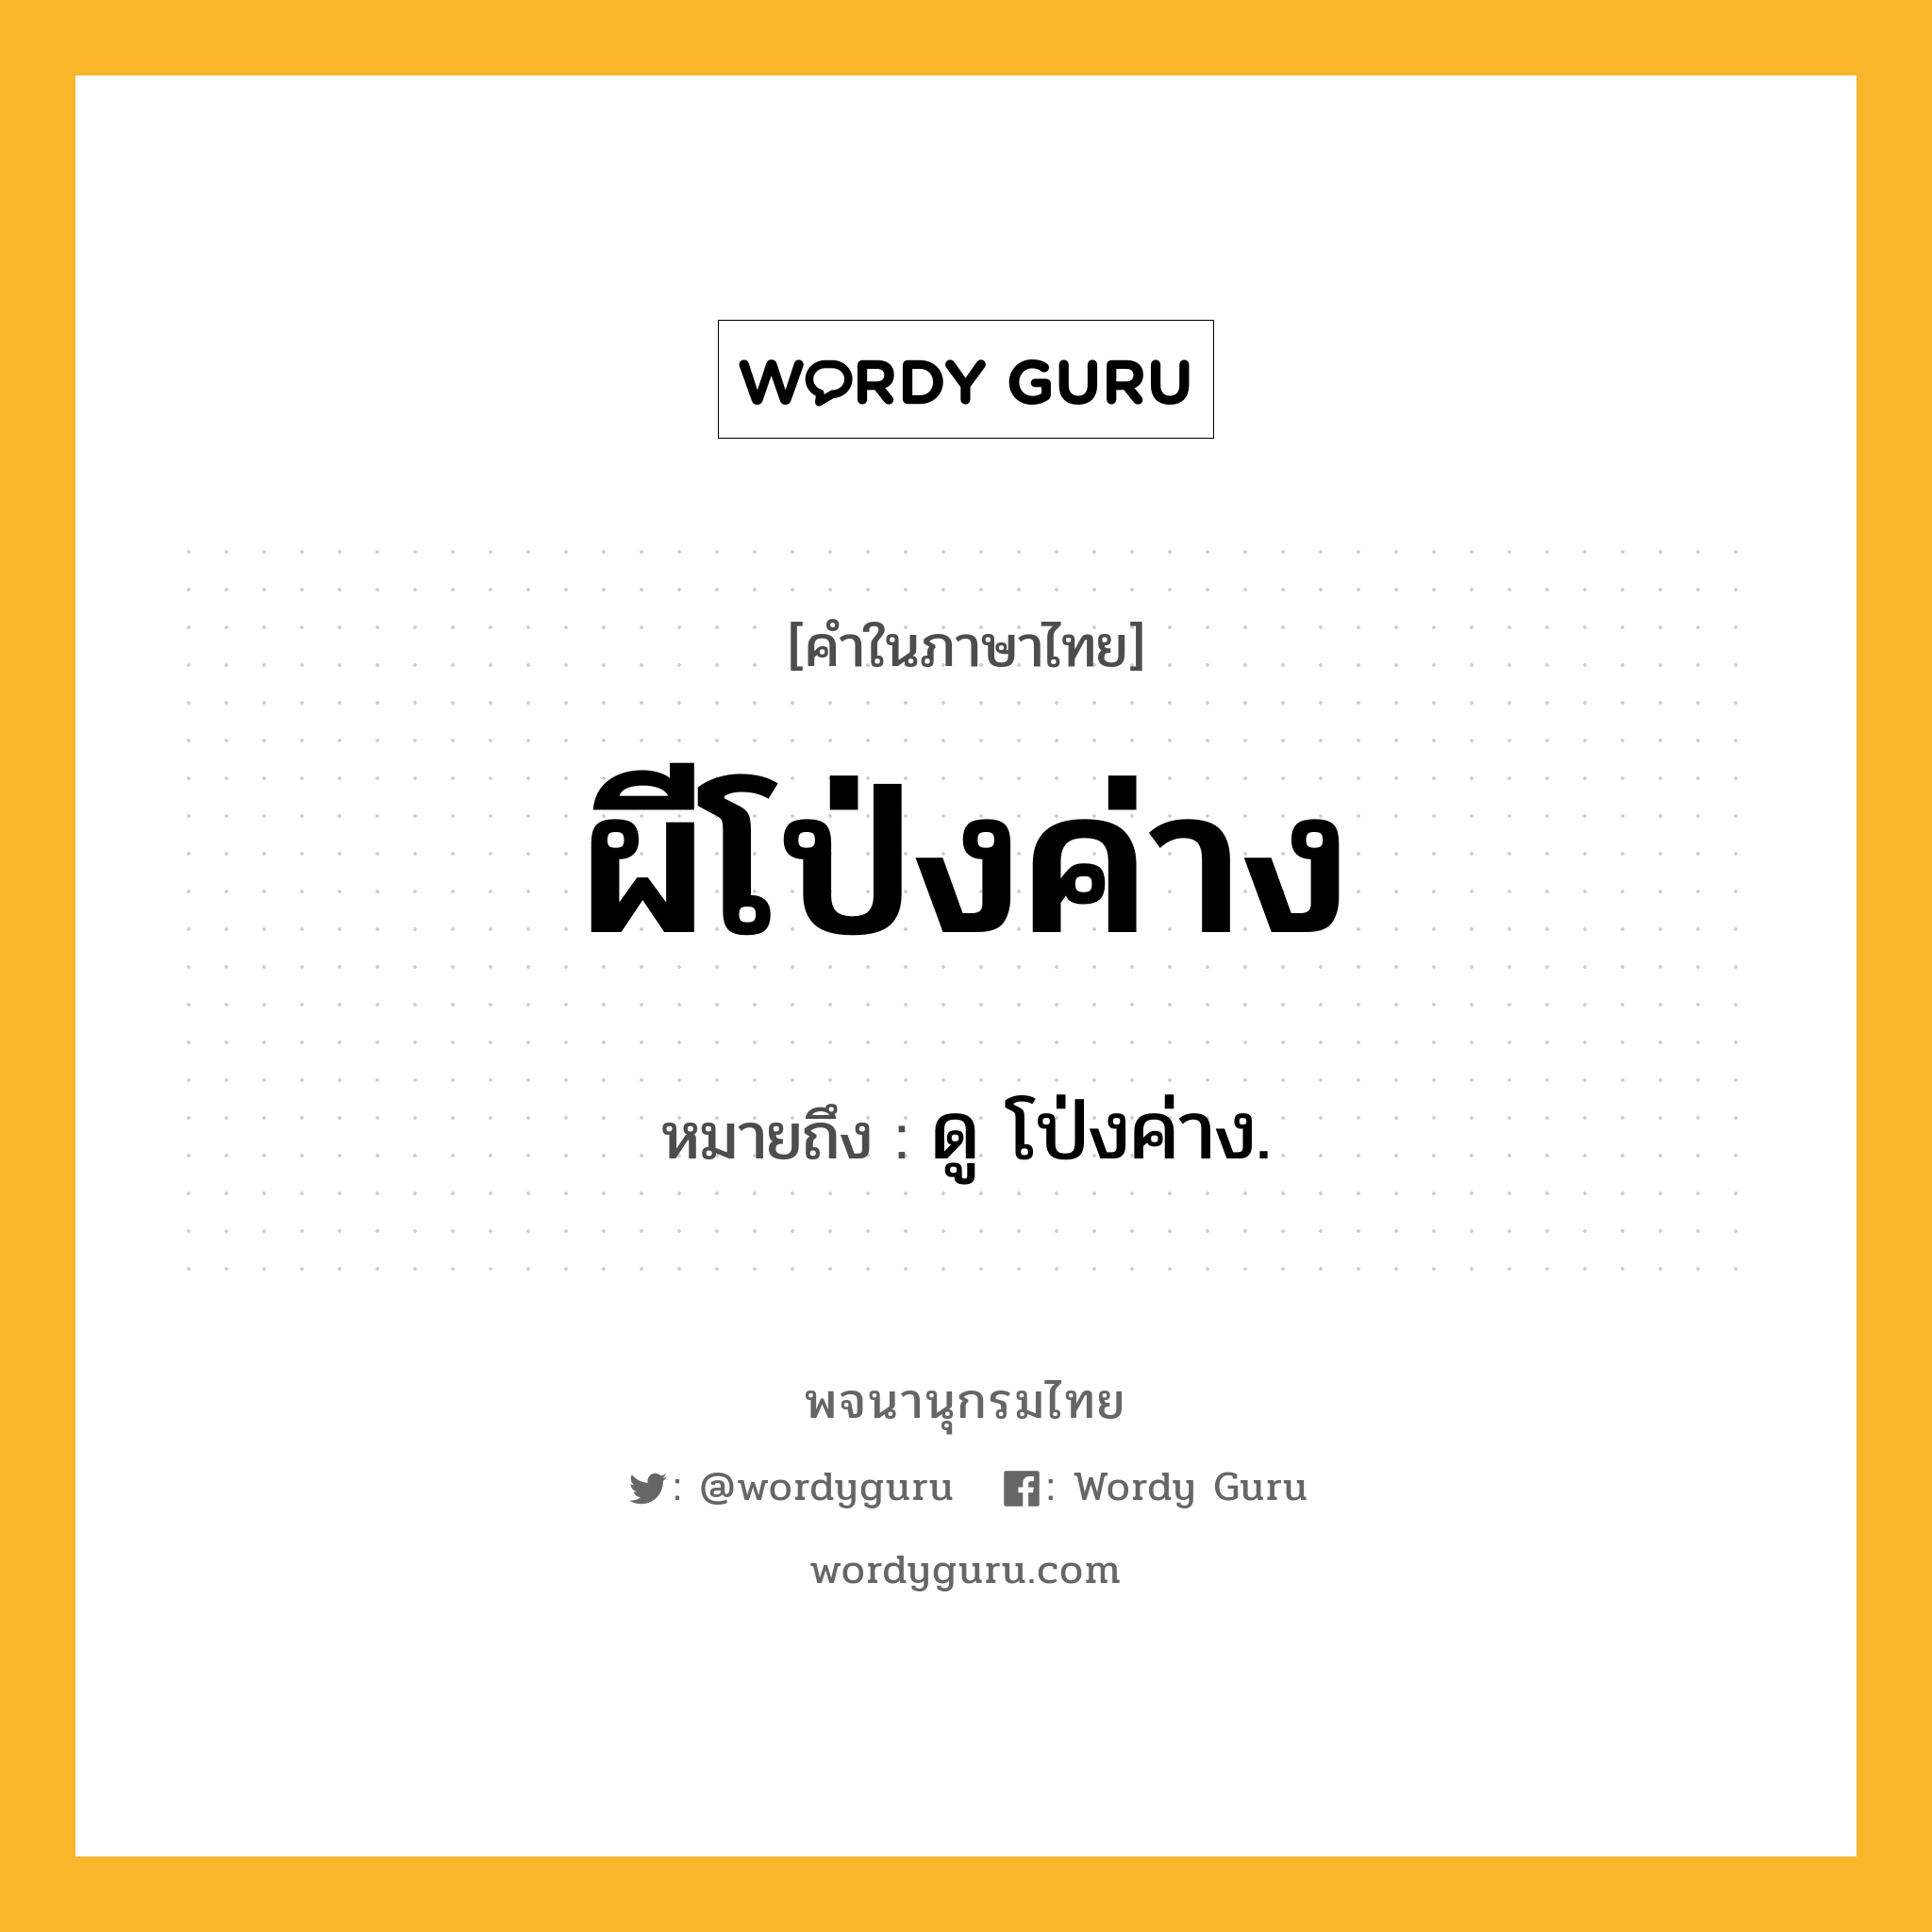 ผีโป่งค่าง ความหมาย หมายถึงอะไร?, คำในภาษาไทย ผีโป่งค่าง หมายถึง ดู โป่งค่าง.